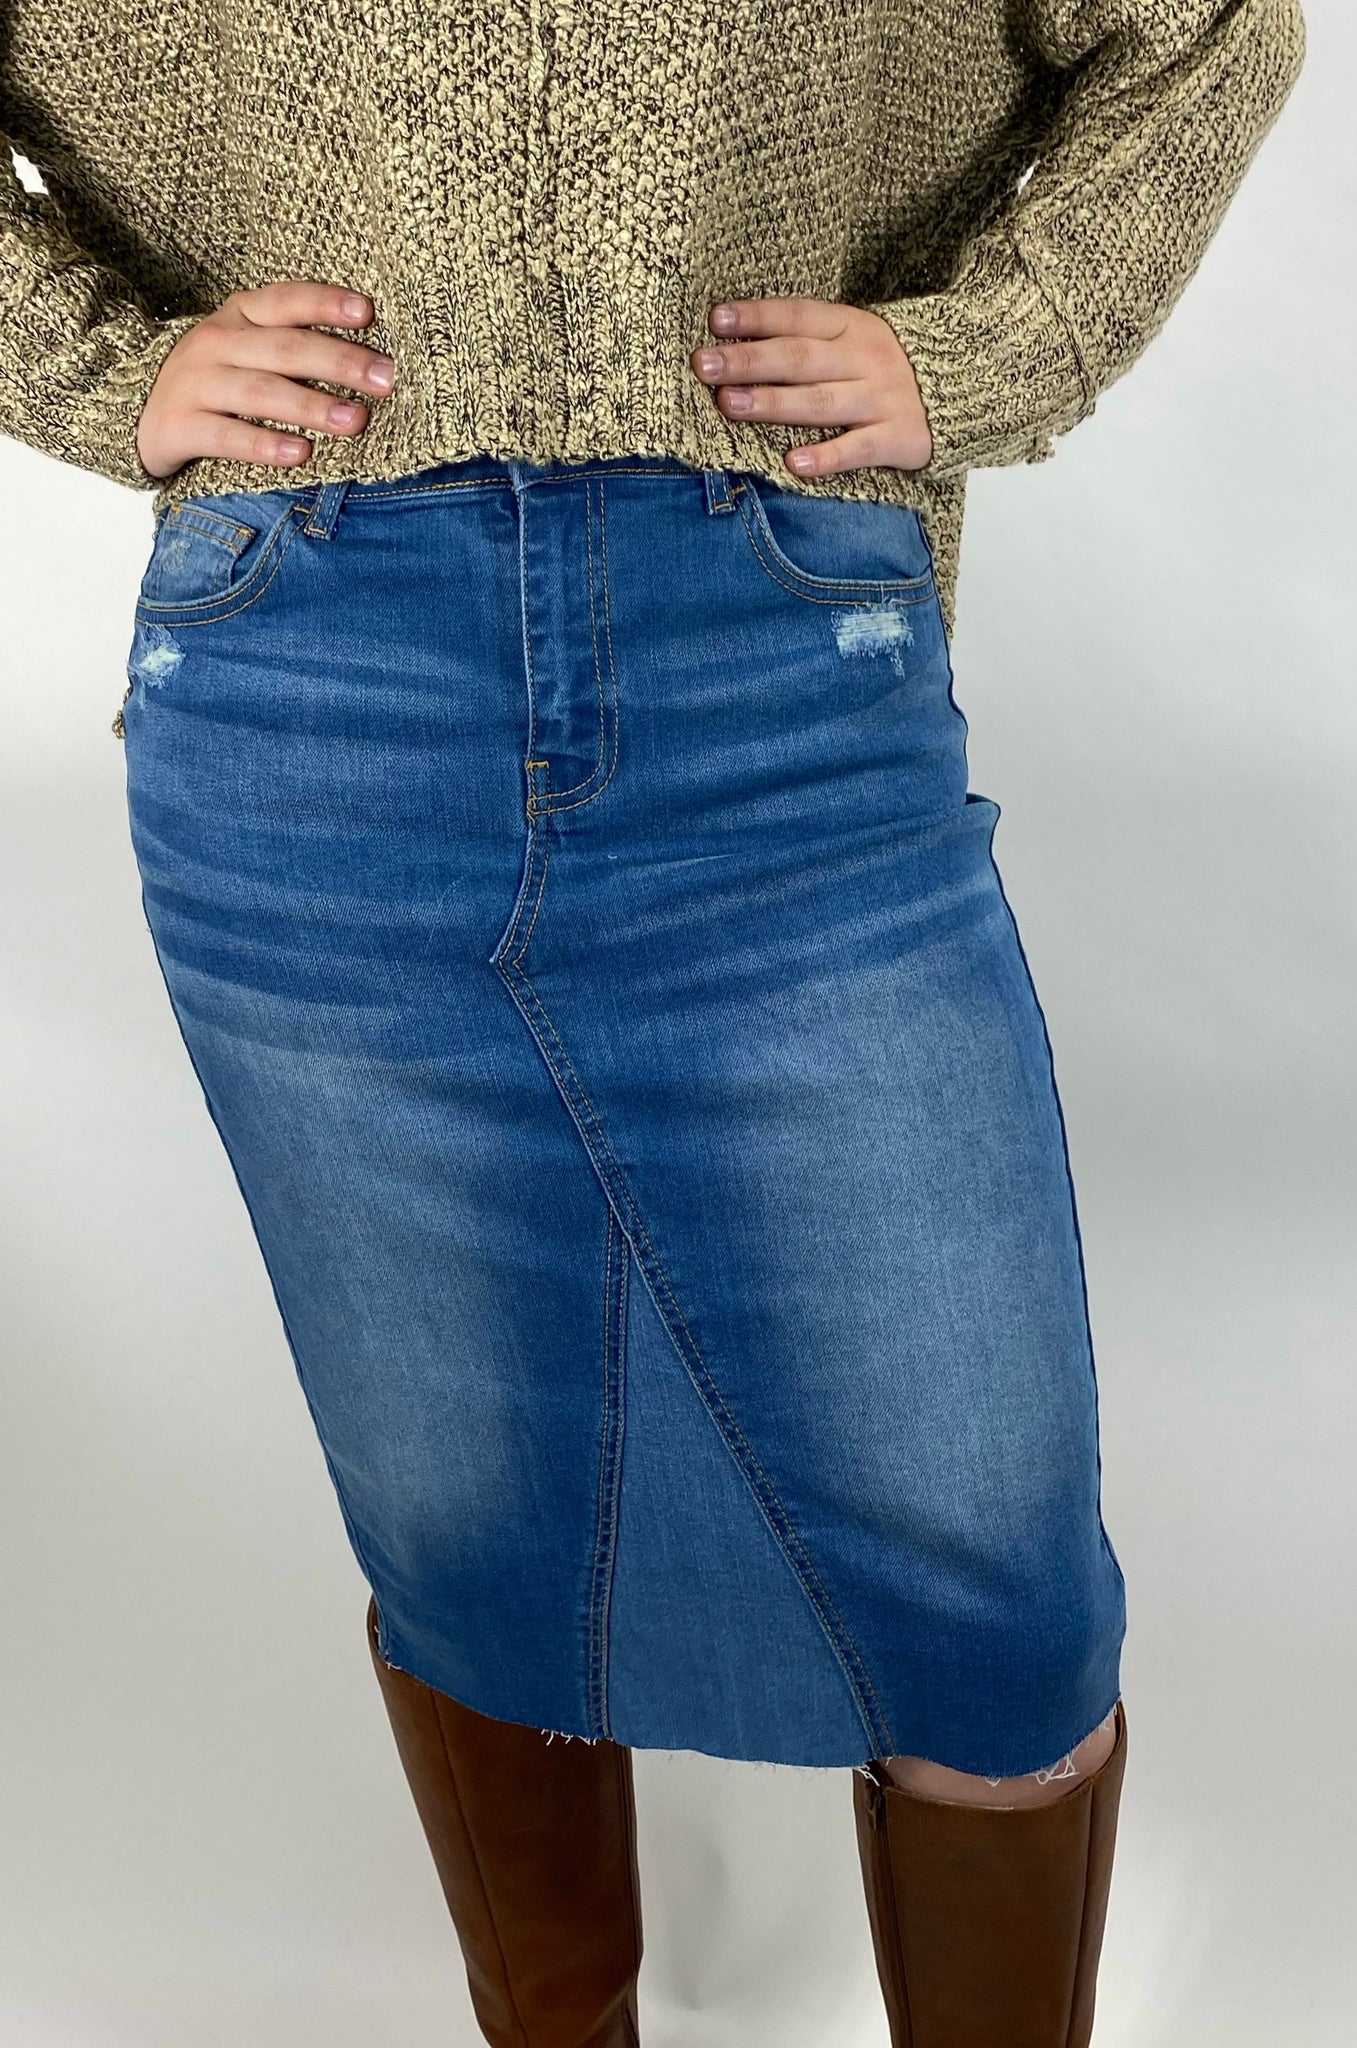 Maisie Denim Skirt in 2-Tone denim FINAL SALE